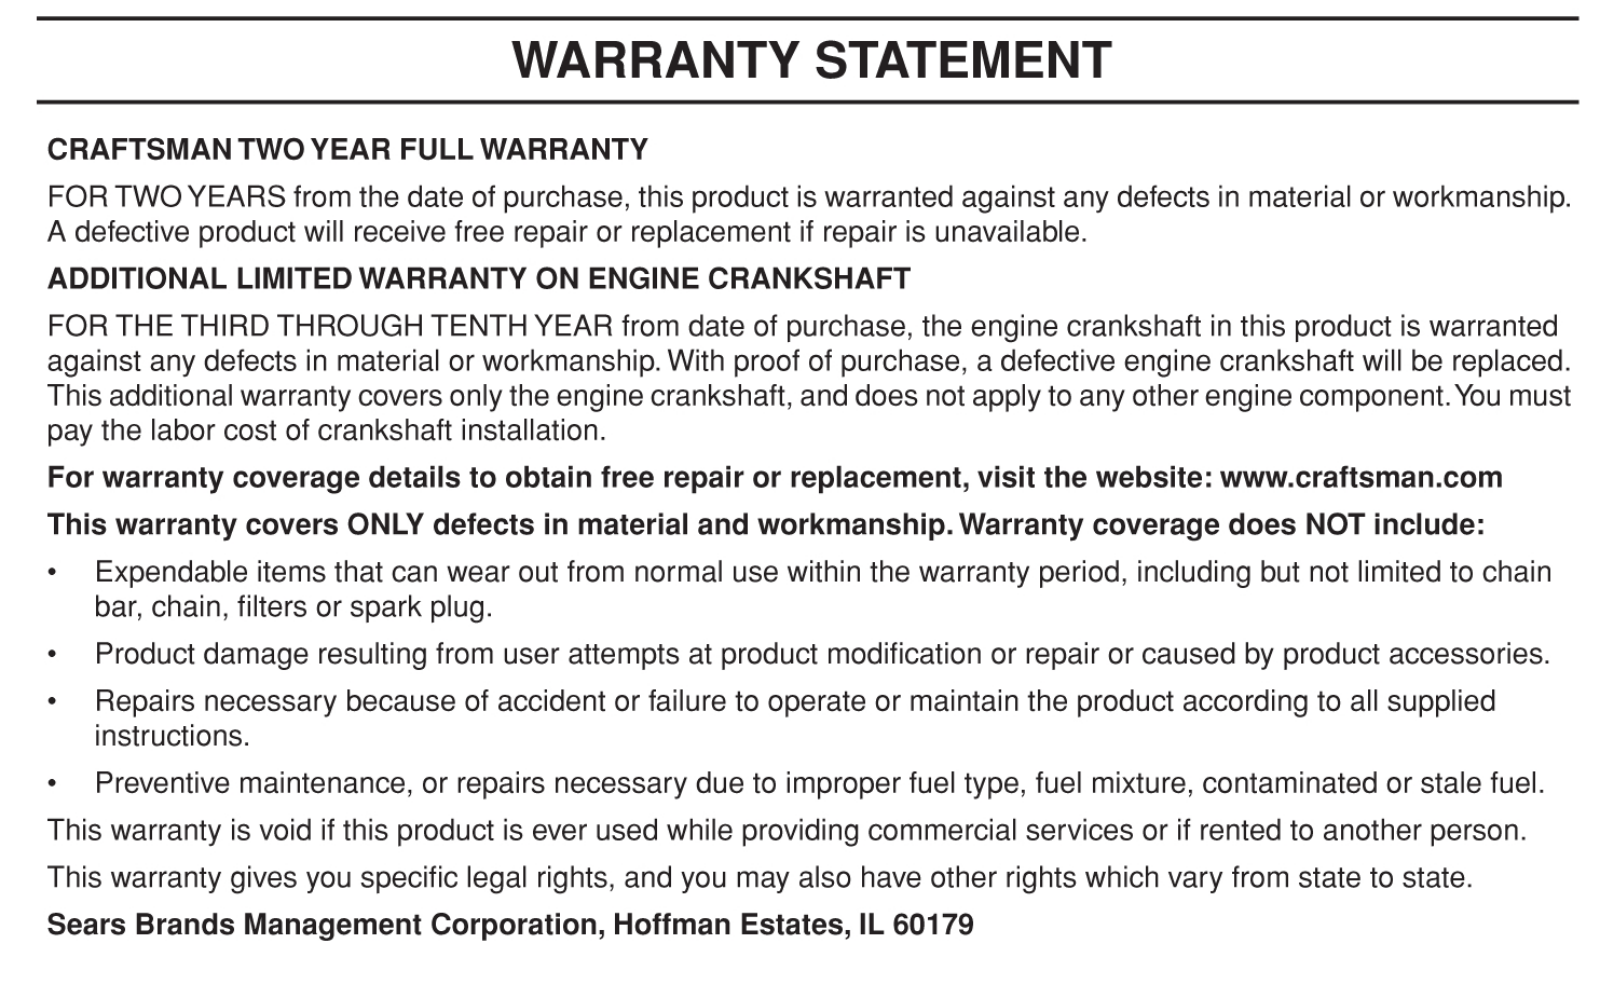 Craftsman Pro 45.7cc 20 Gas Chainsaw Manufacturer's Warranty